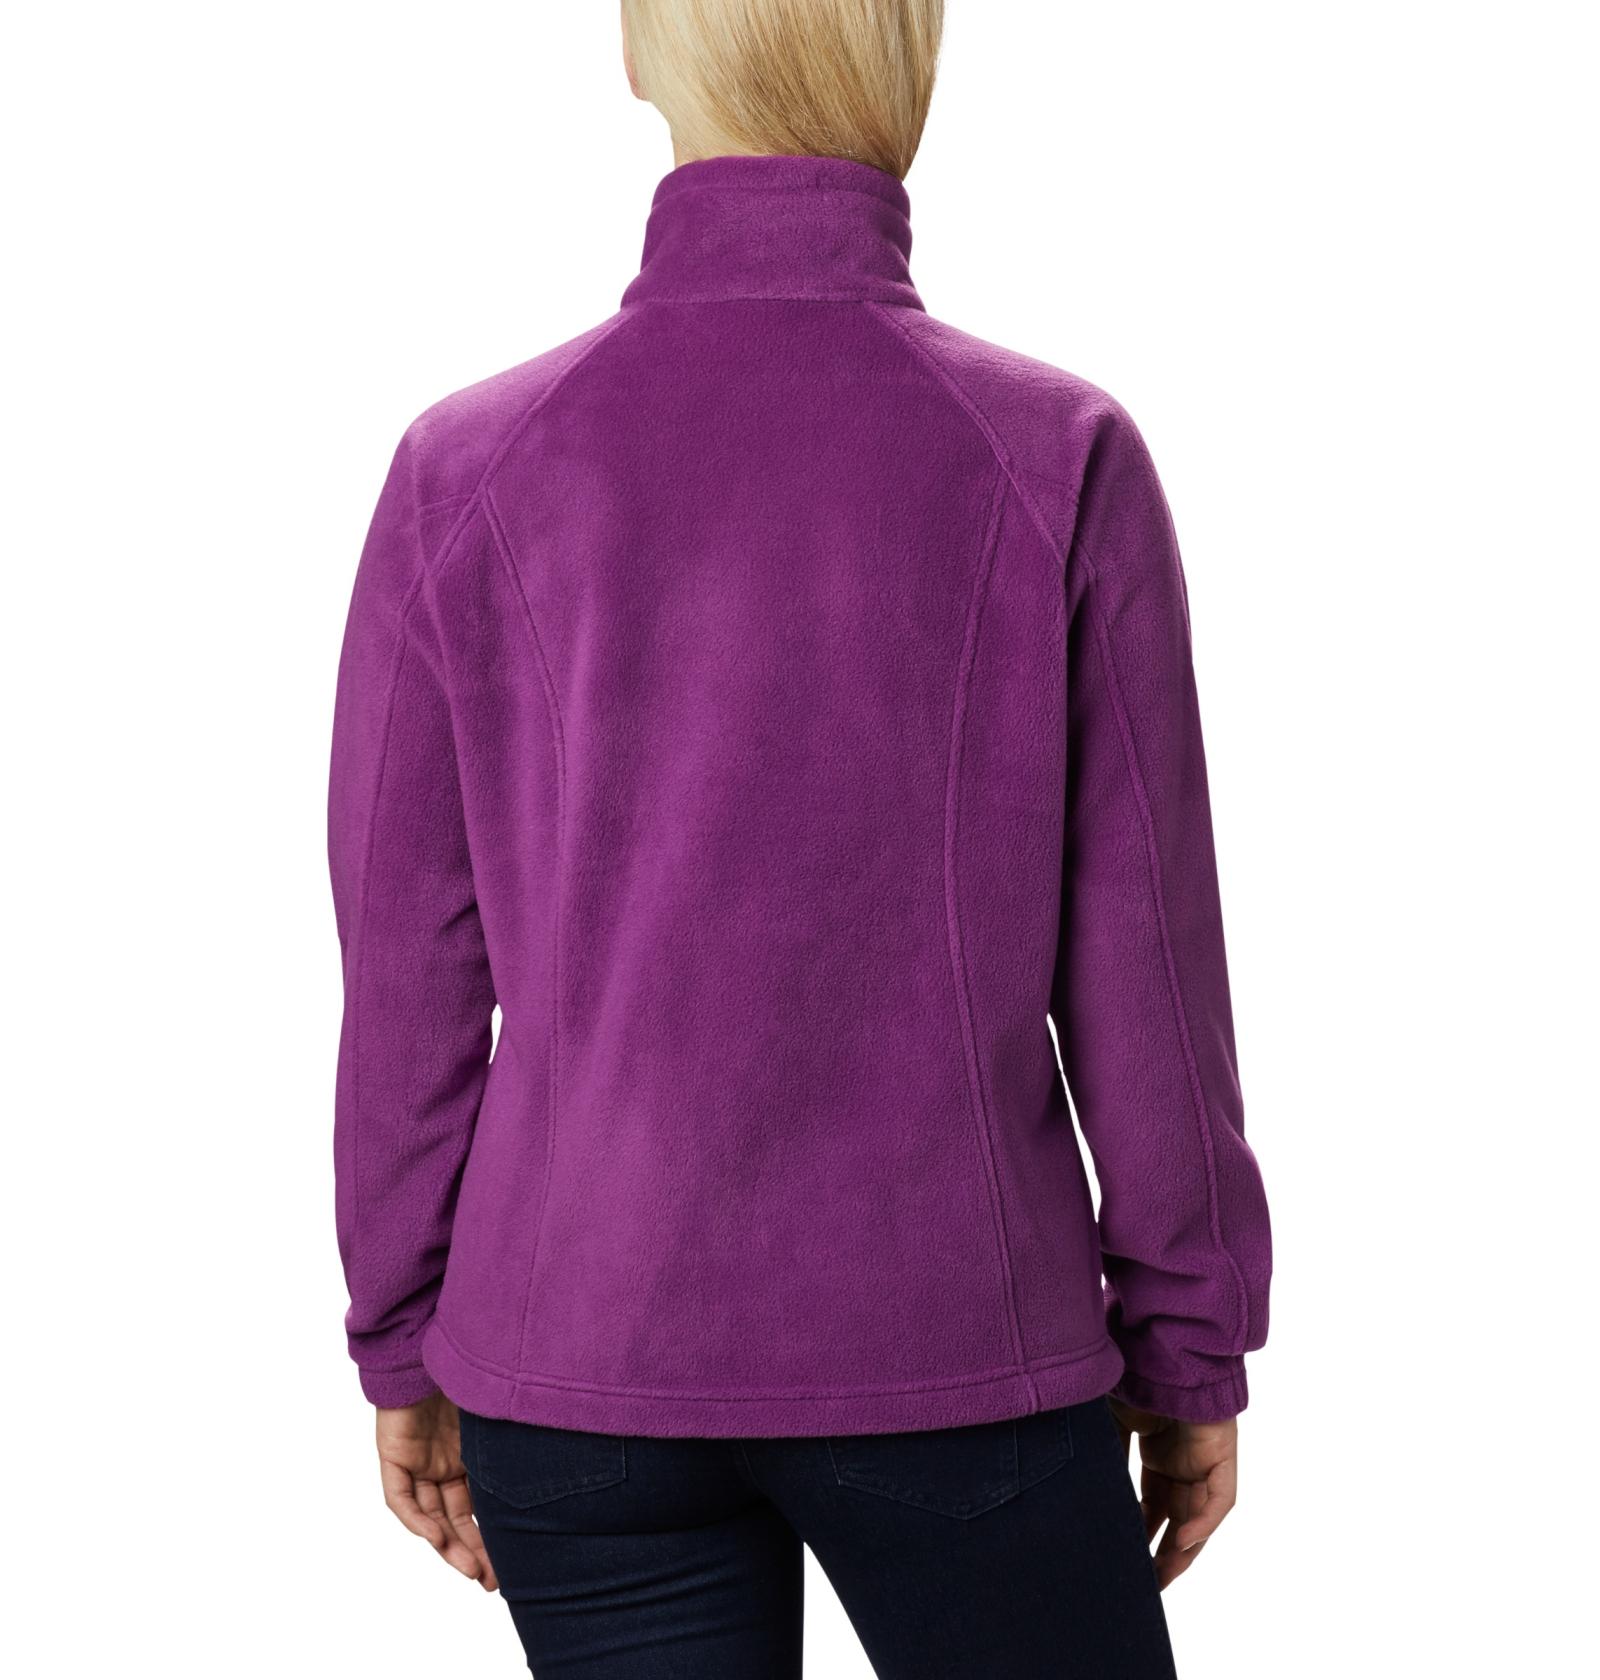 Columbia Women’s Benton Springs Full Zip Fleece Jacket Plum